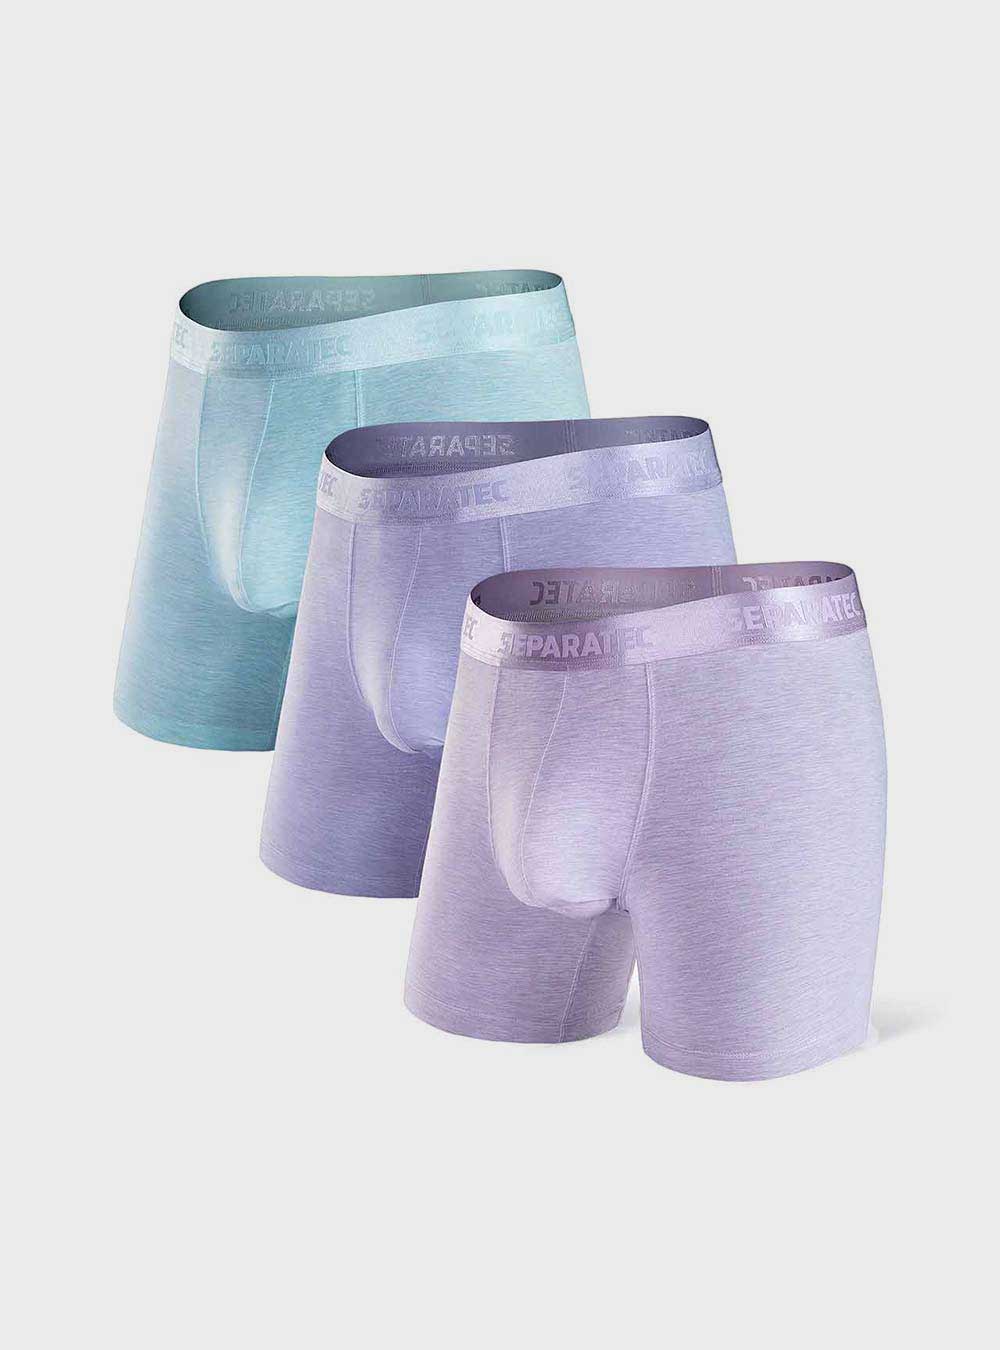 Separatec Cotton Dual Pouch Men's Underwear India